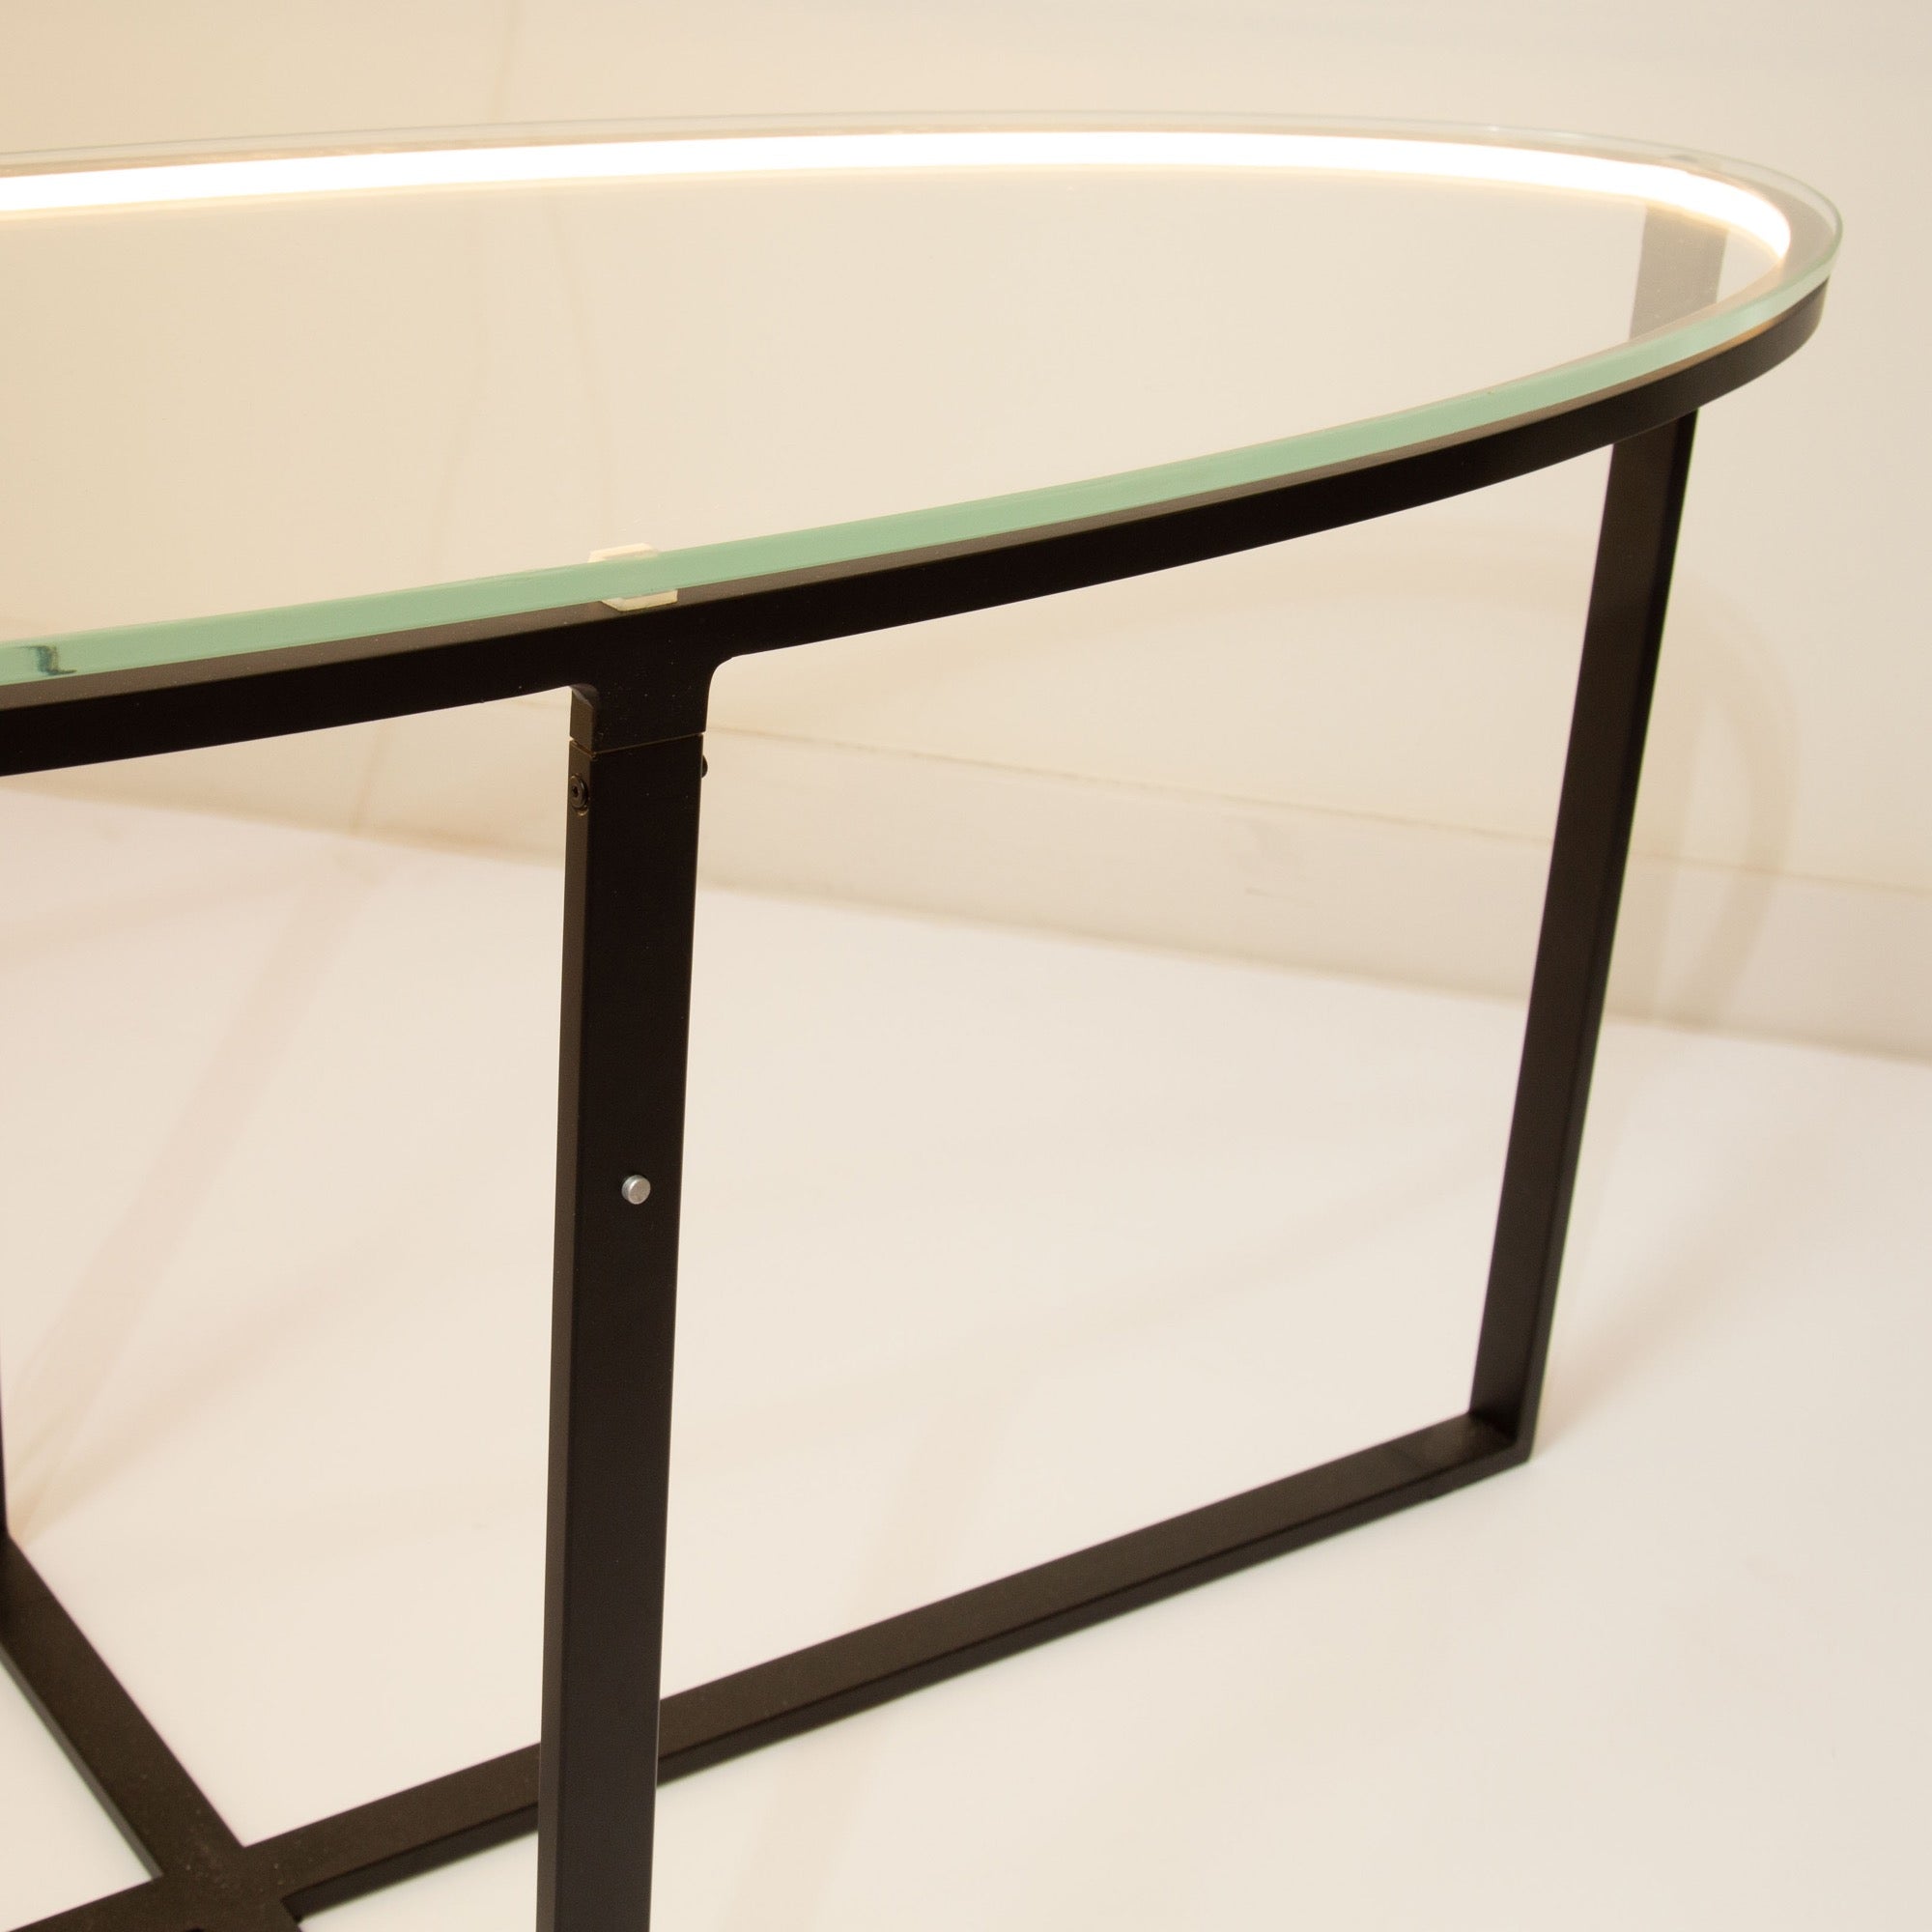 Tavola 9W LED Oval Table